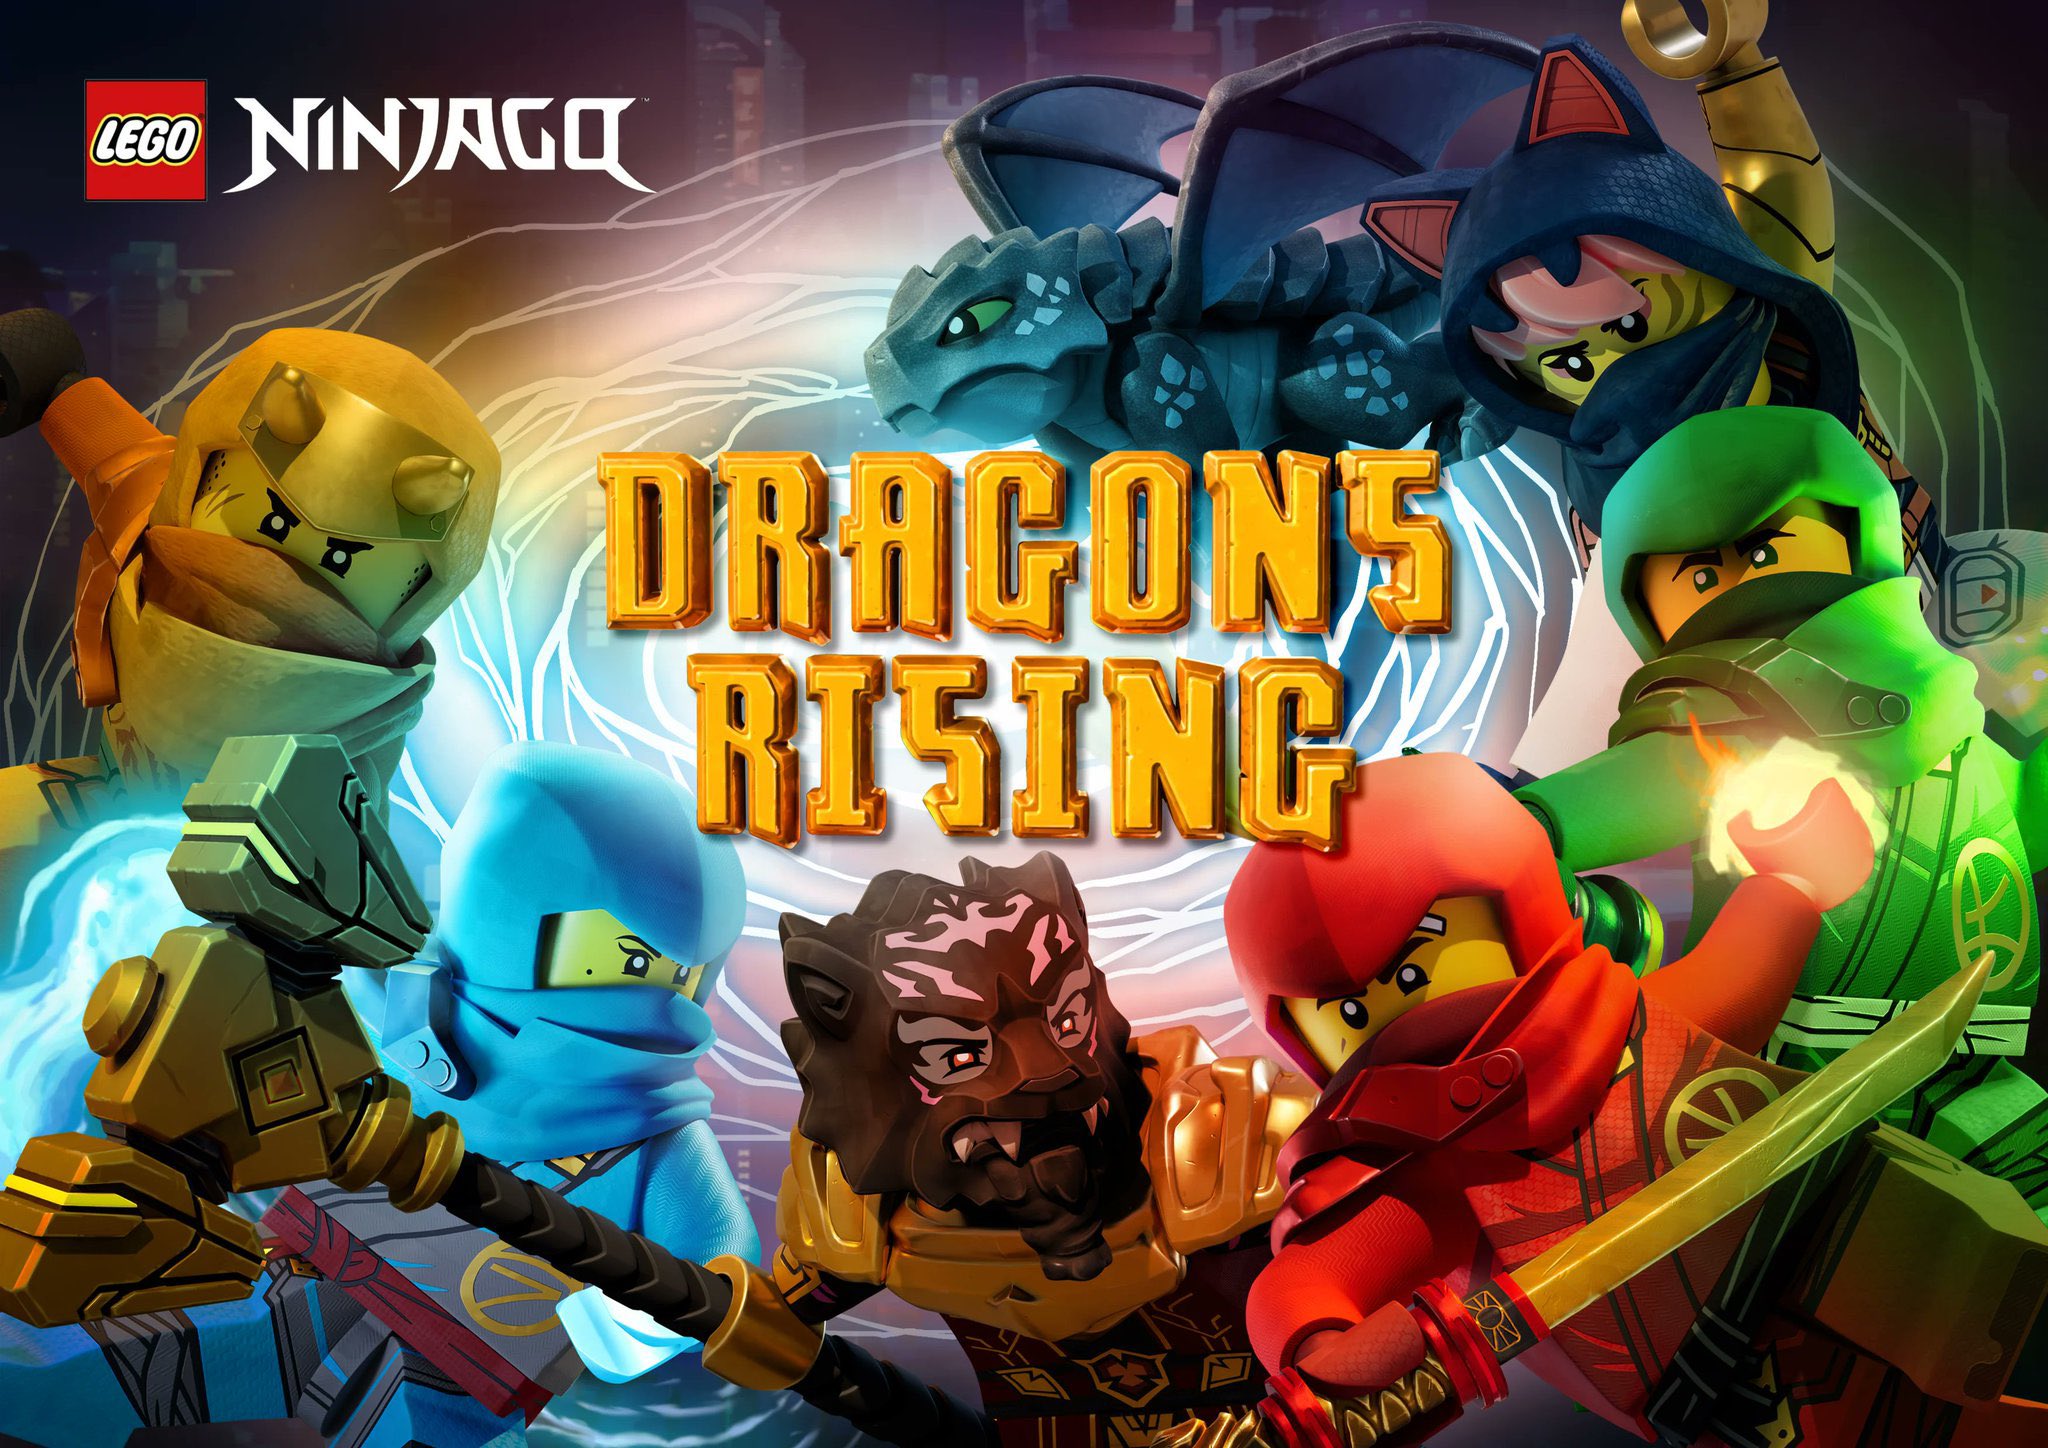 Ninjago: Dragons Rising - Wikipedia